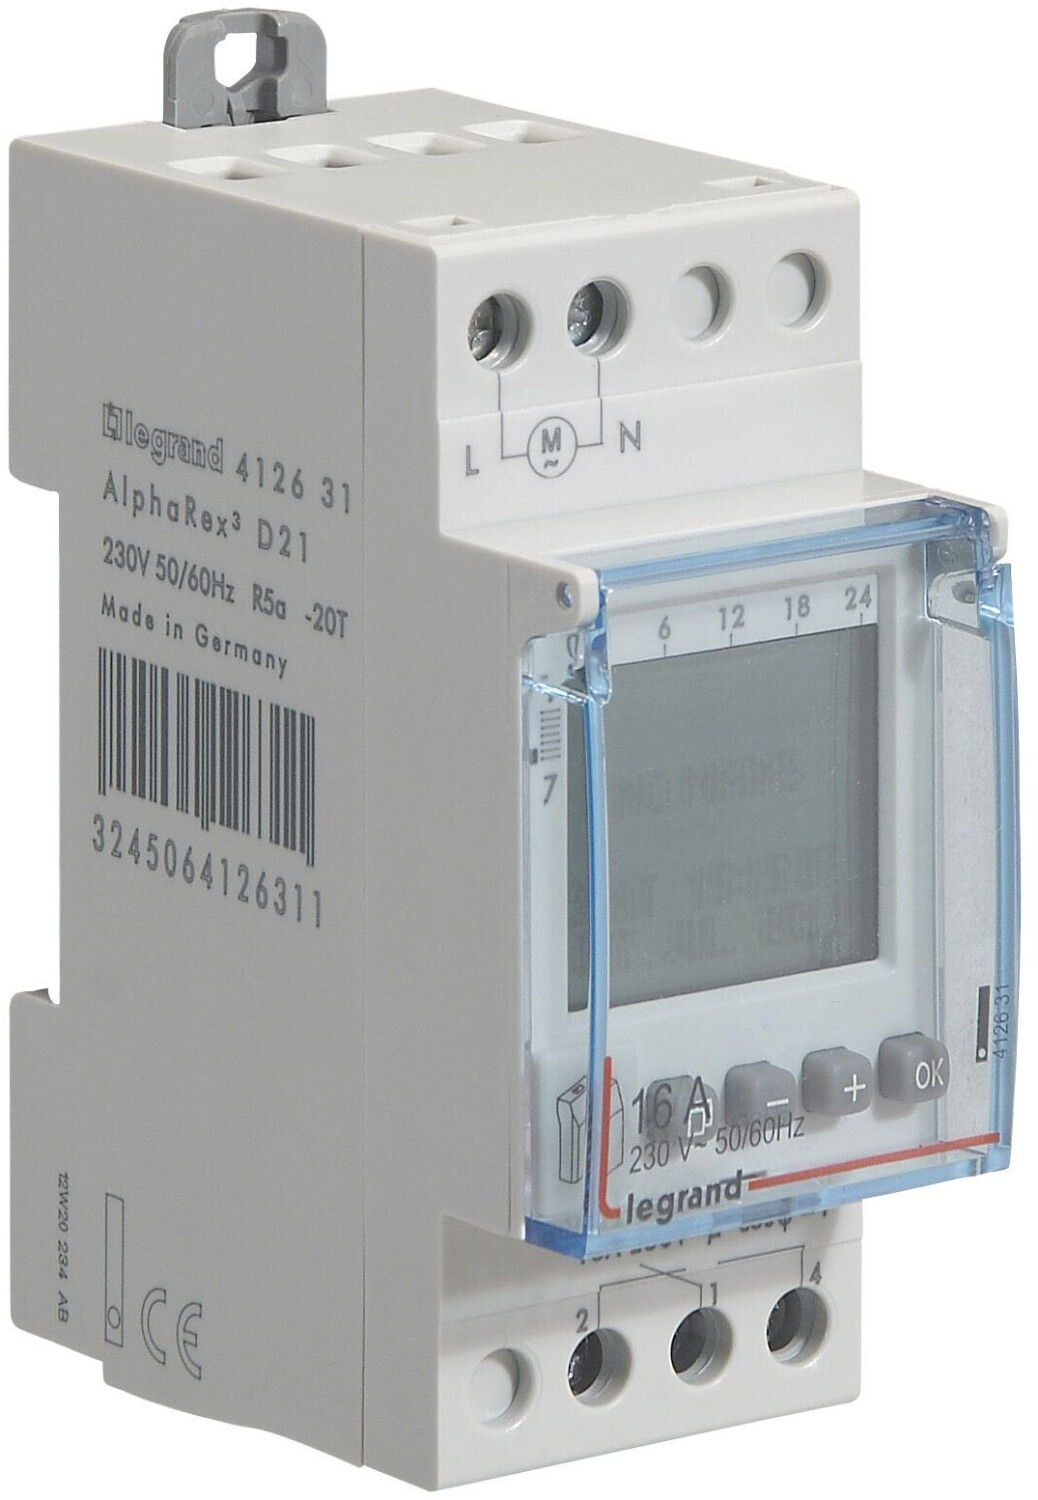 Interrupteur horaire digital modulaire programmable journalière ou  hebdomadaire - 1 sortie 16A 250V alimentation 230V - 412631 - LEGRAND